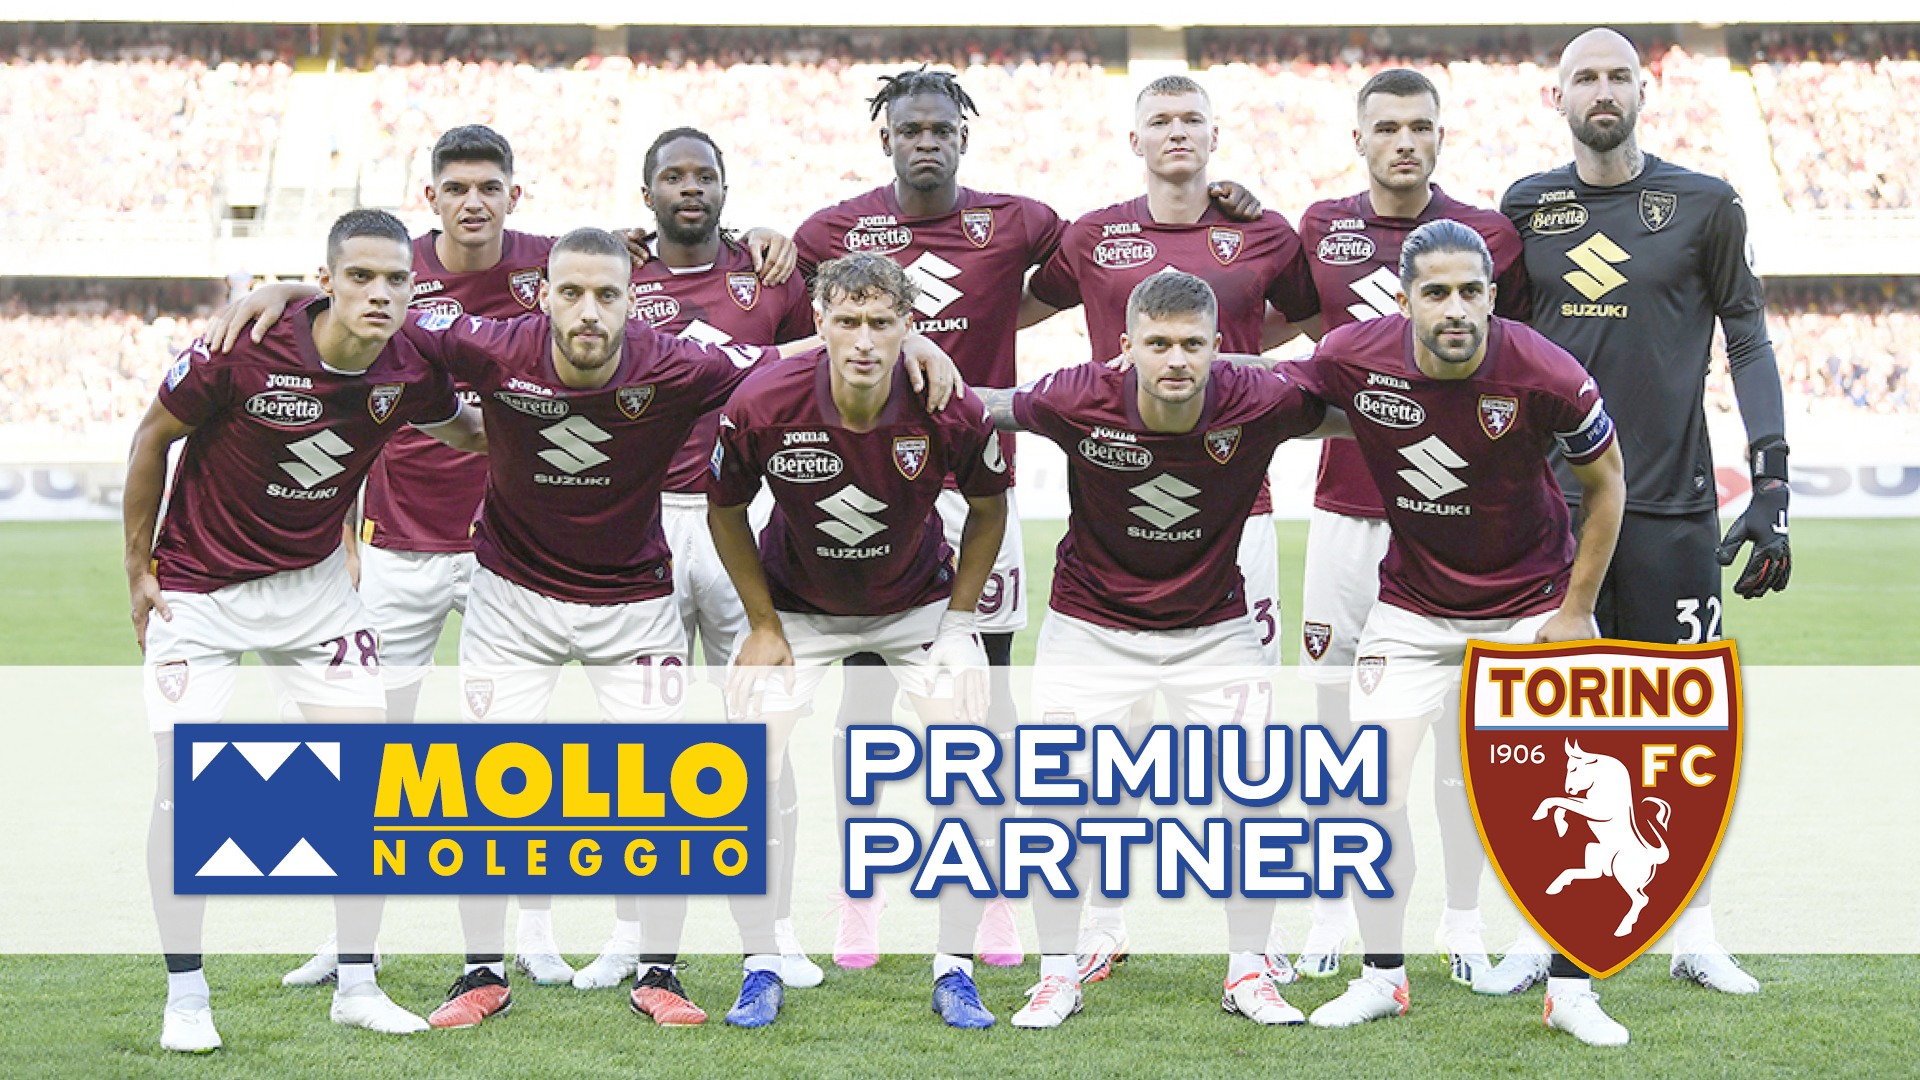 Mollo Noleggio Premium Partner TORINO FC